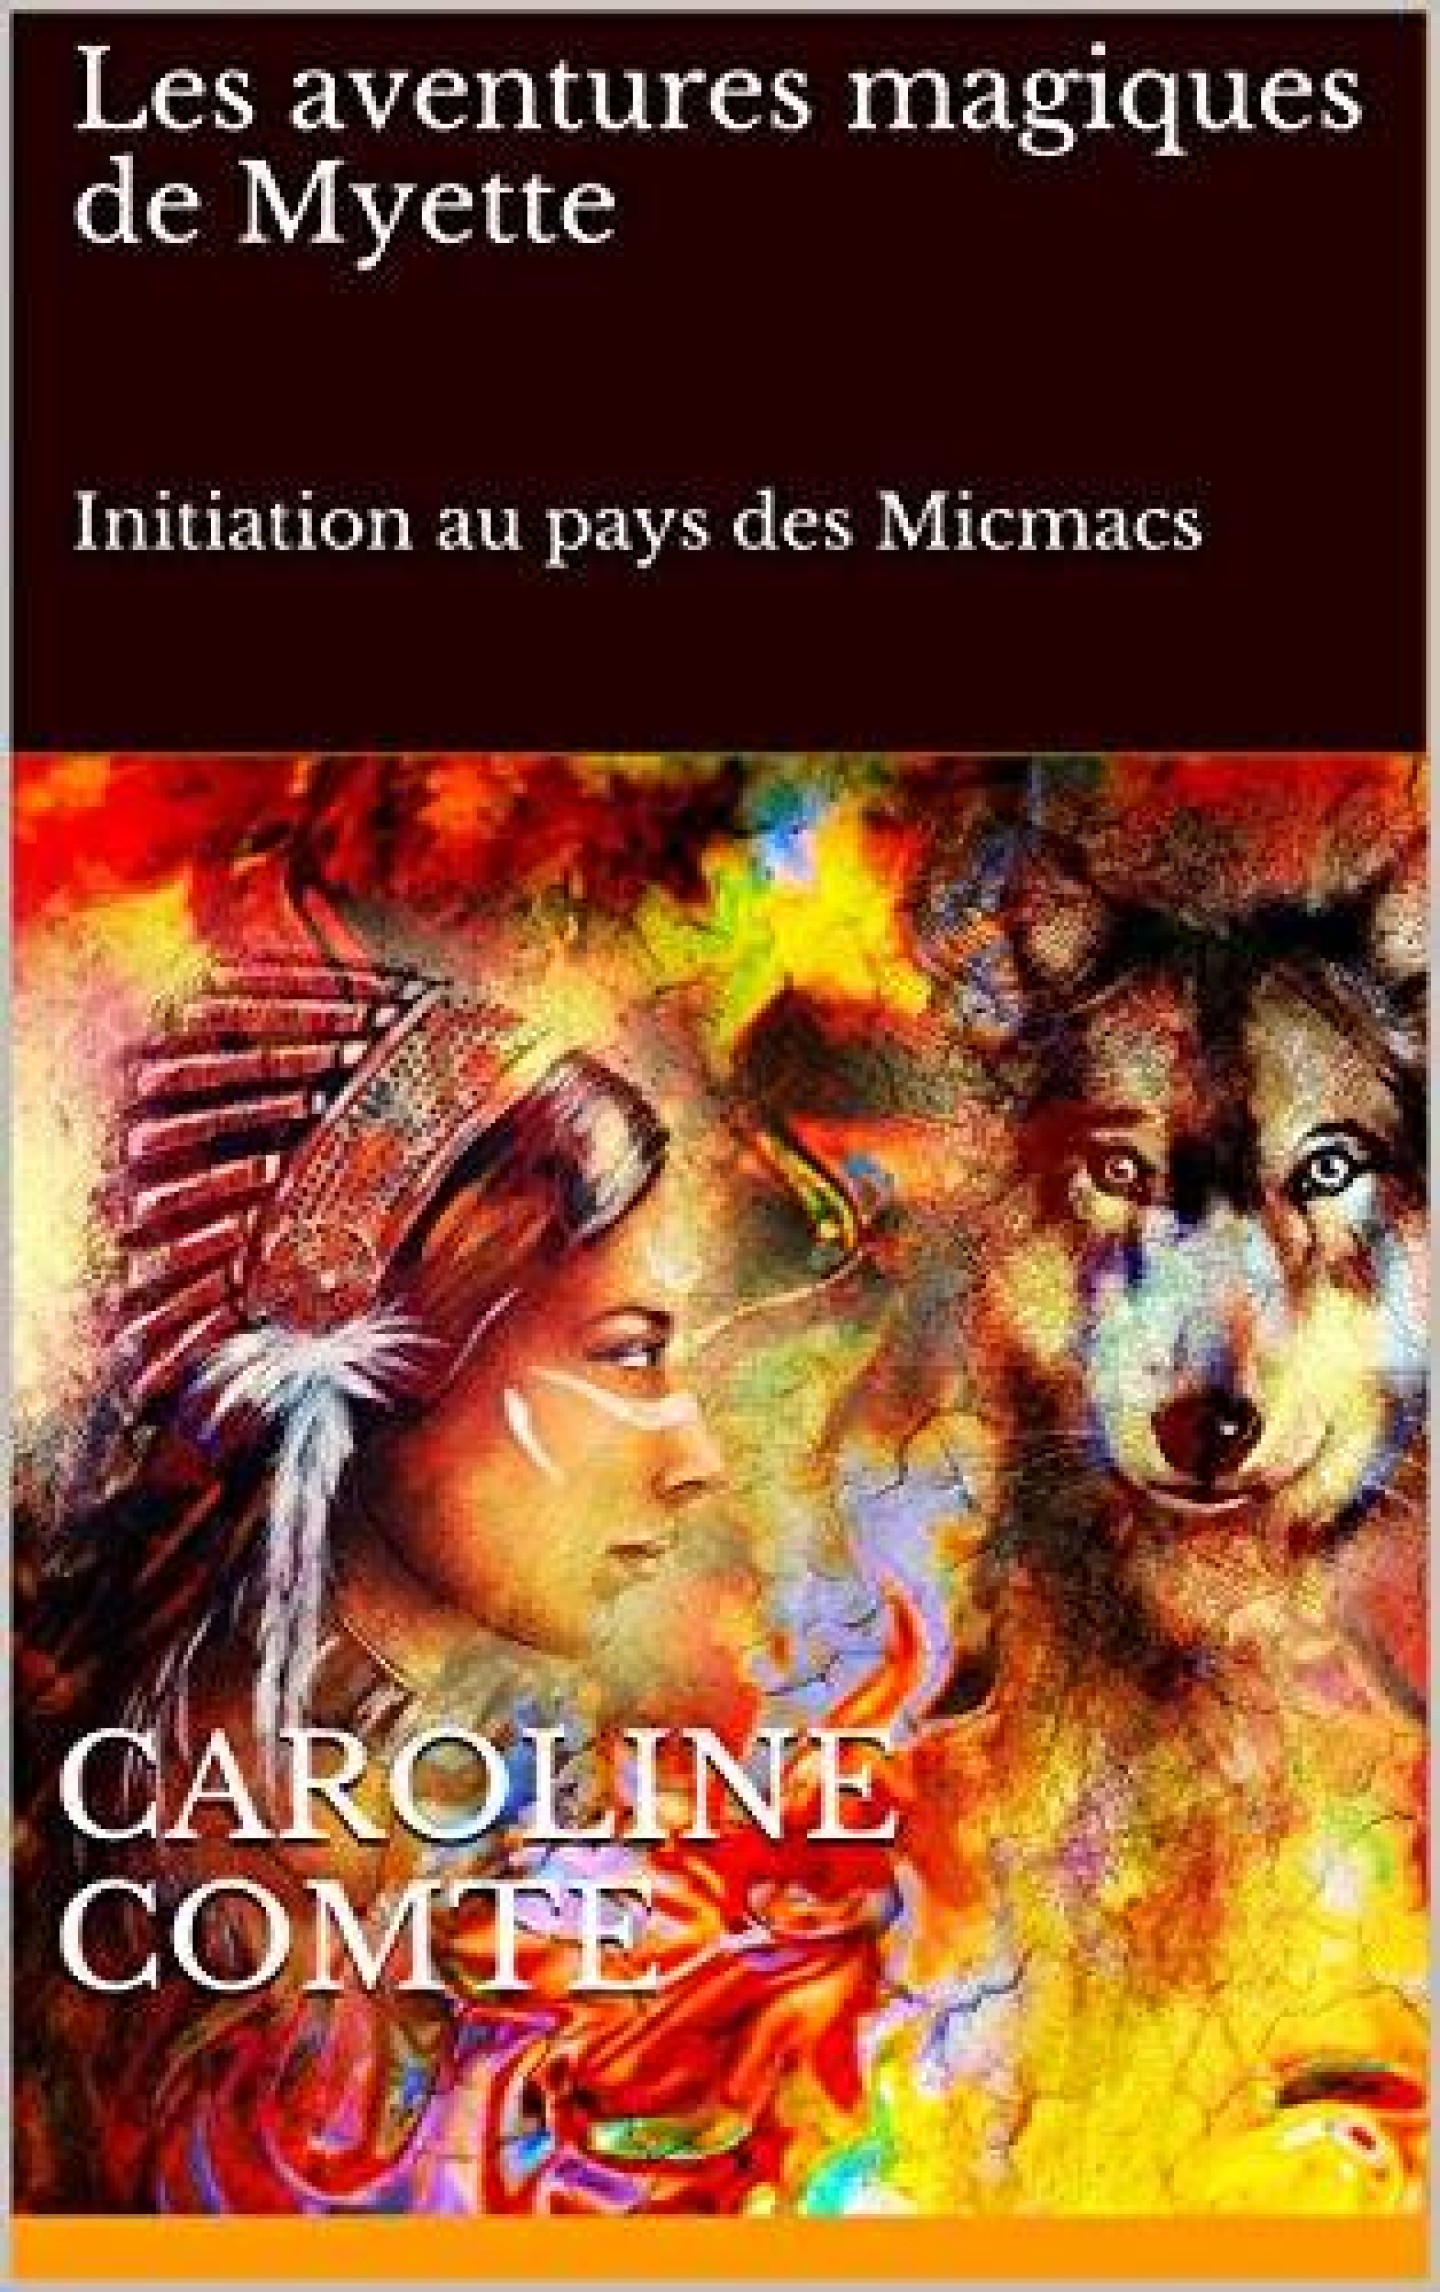 Les aventures magiques de Myette de Caroline Comte